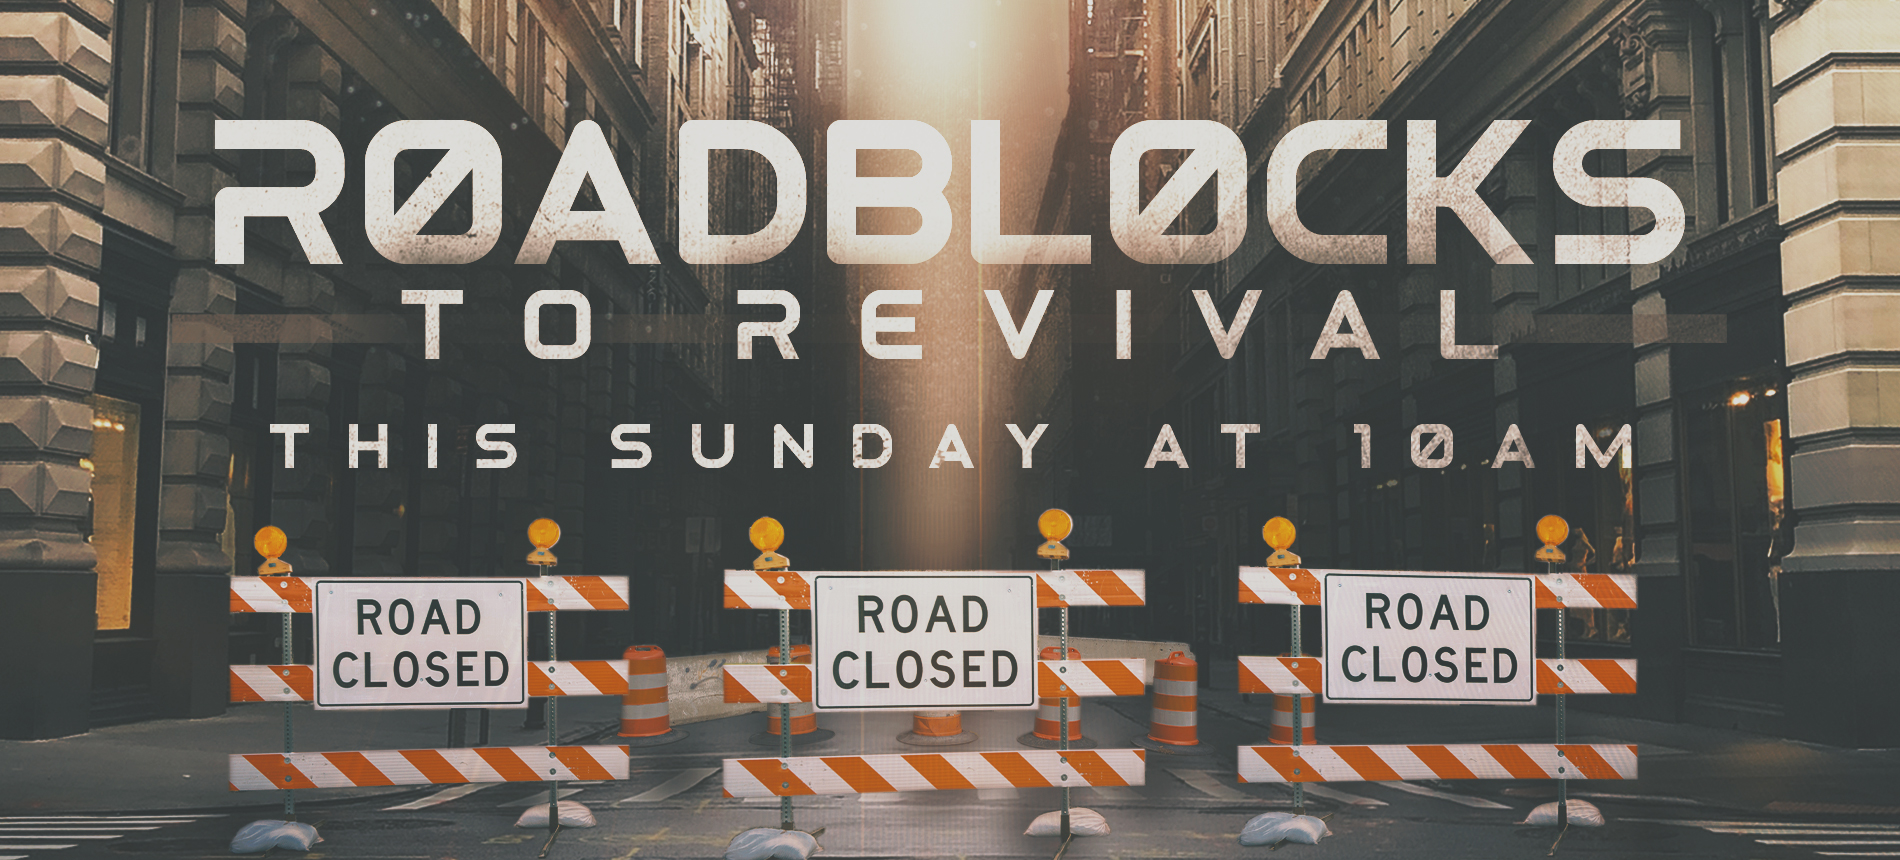 WHCE | Roadblocks to Revival